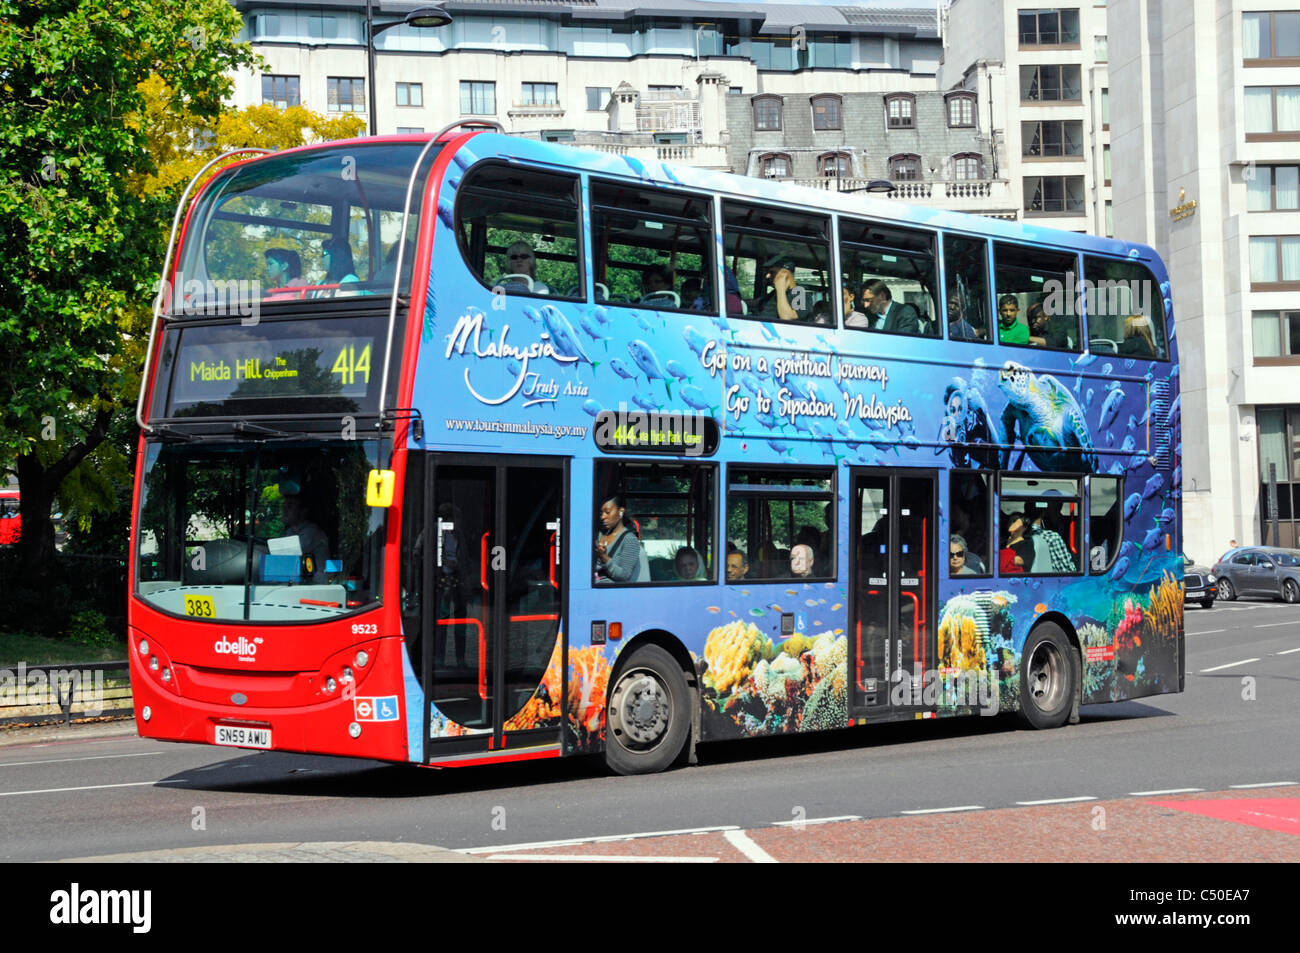 Werbung an der Seite des Doppeldeckerbusses, die den Tourismus in Malaysia mit farbenfrohen Werbespots in roter Farbe auf der Vorderseite des Busses in England UK fördert Stockfoto